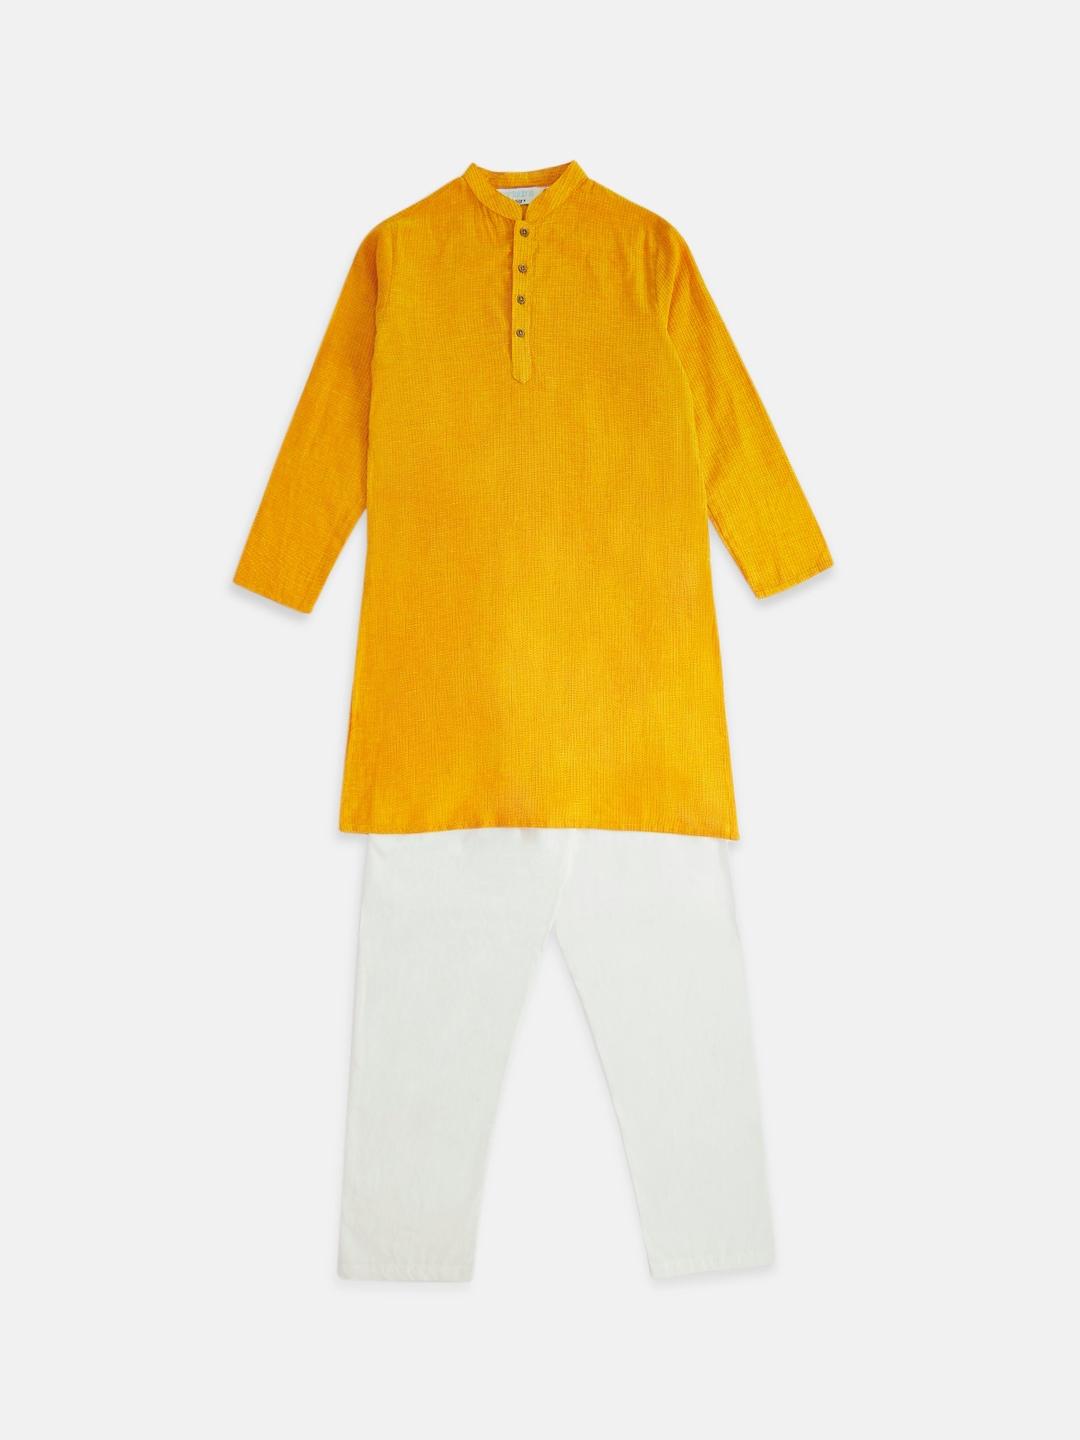 indus route by Pantaloons Boys Mustard Yellow Pure Cotton Kurta with Pyjamas